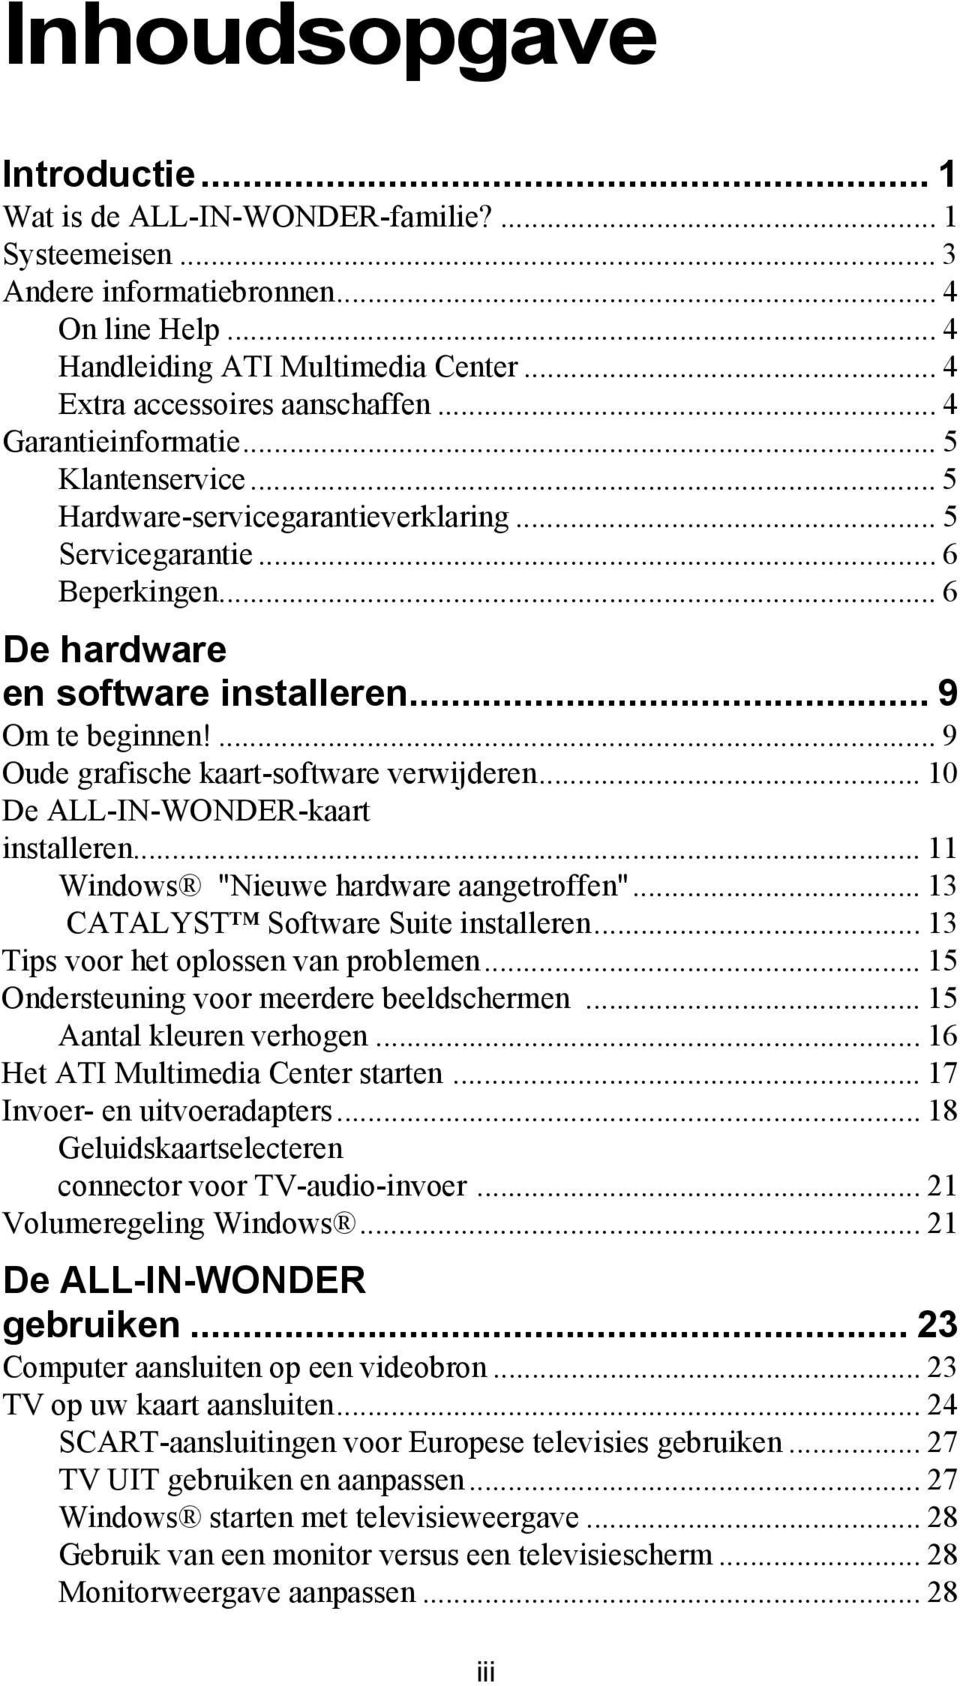 .. 9 Om te beginnen!... 9 Oude grafische kaart-software verwijderen... 10 De ALL-IN-WONDER-kaart installeren... 11 Windows "Nieuwe hardware aangetroffen"... 13 CATALYST Software Suite installeren.